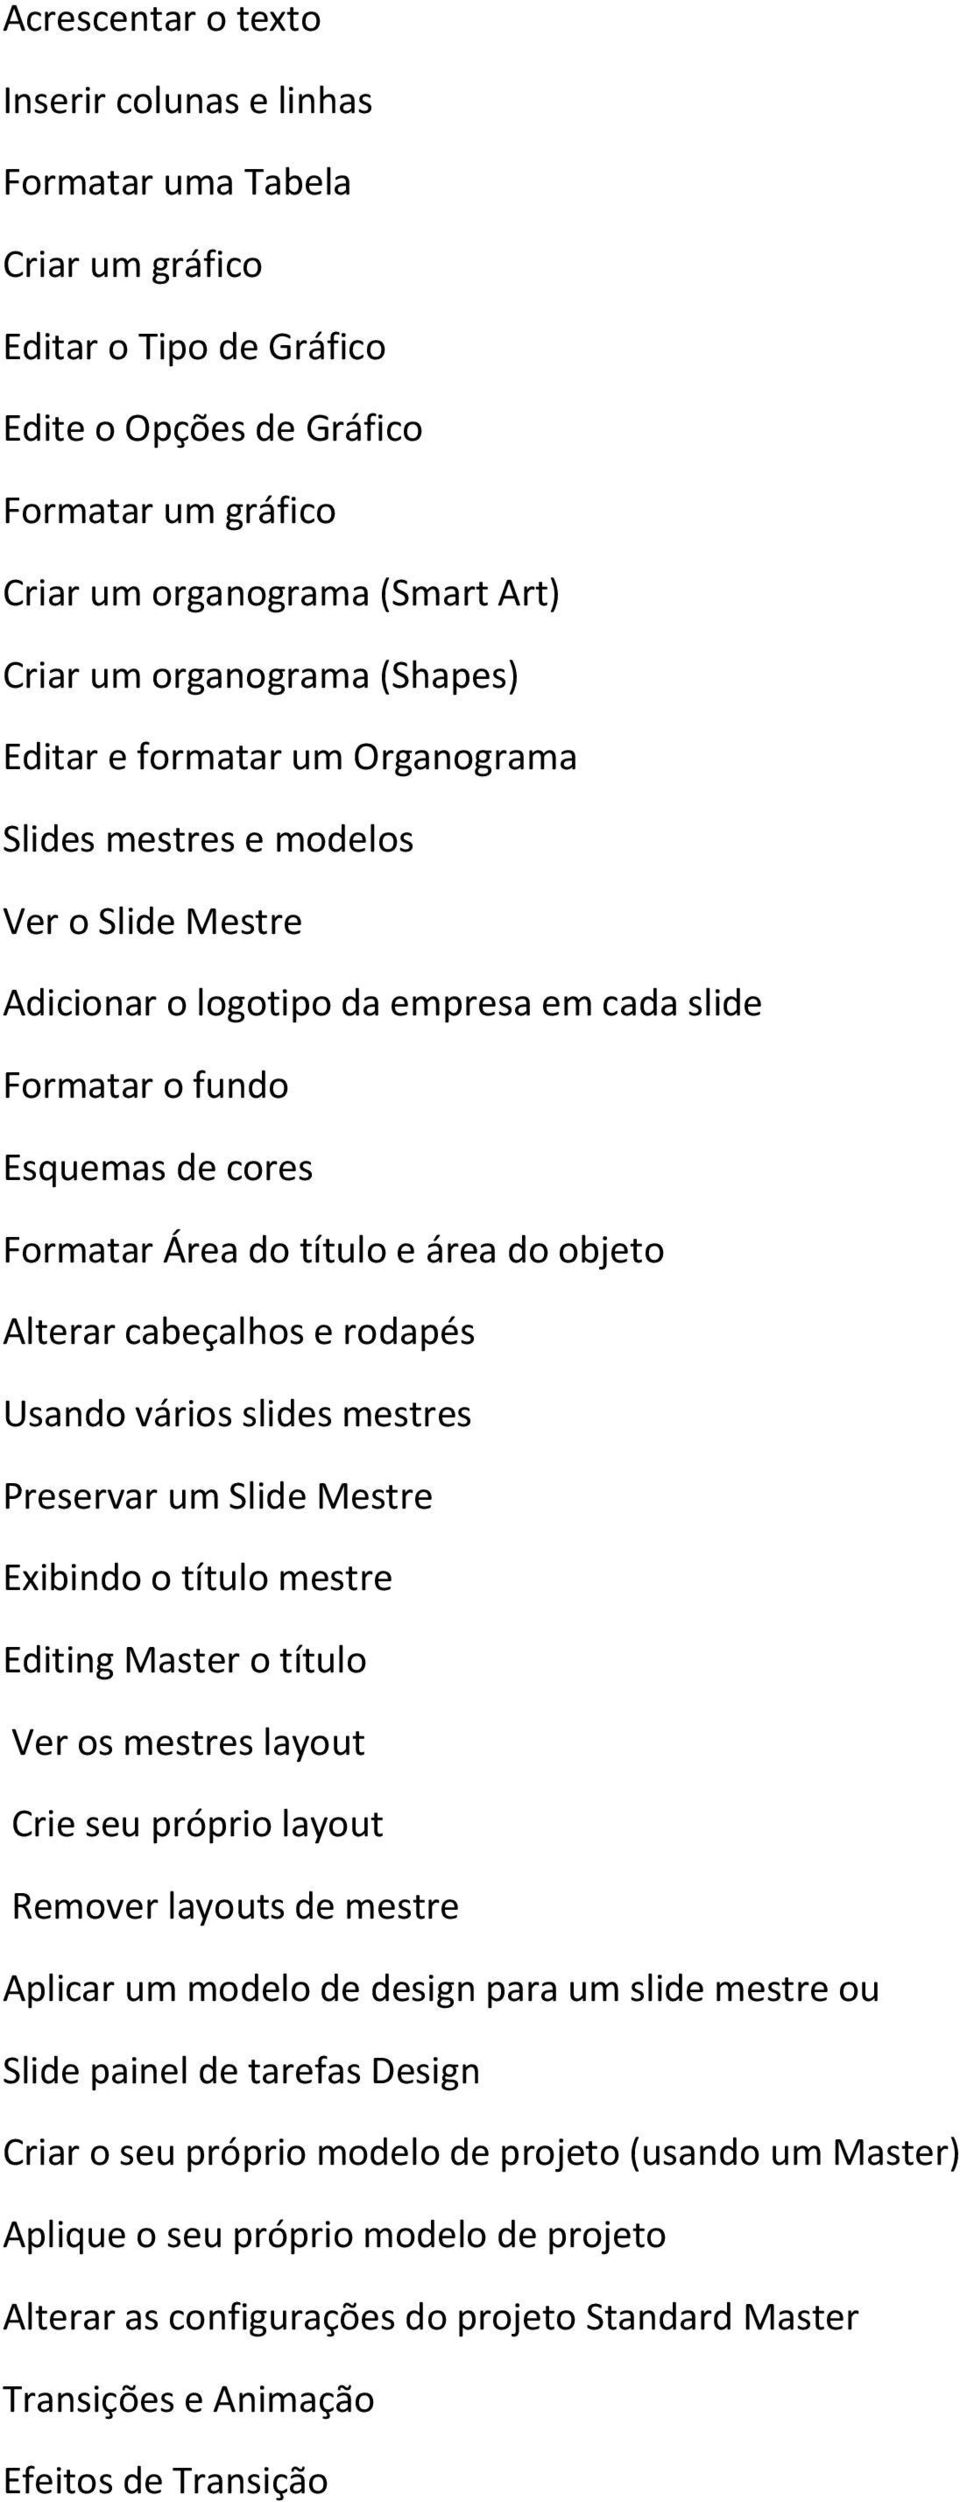 título e área do objeto Alterar cabeçalhos e rodapés Usando vários slides mestres Preservar um Slide Mestre Exibindo o título mestre Editing Master o título Ver os mestres layout Crie seu próprio